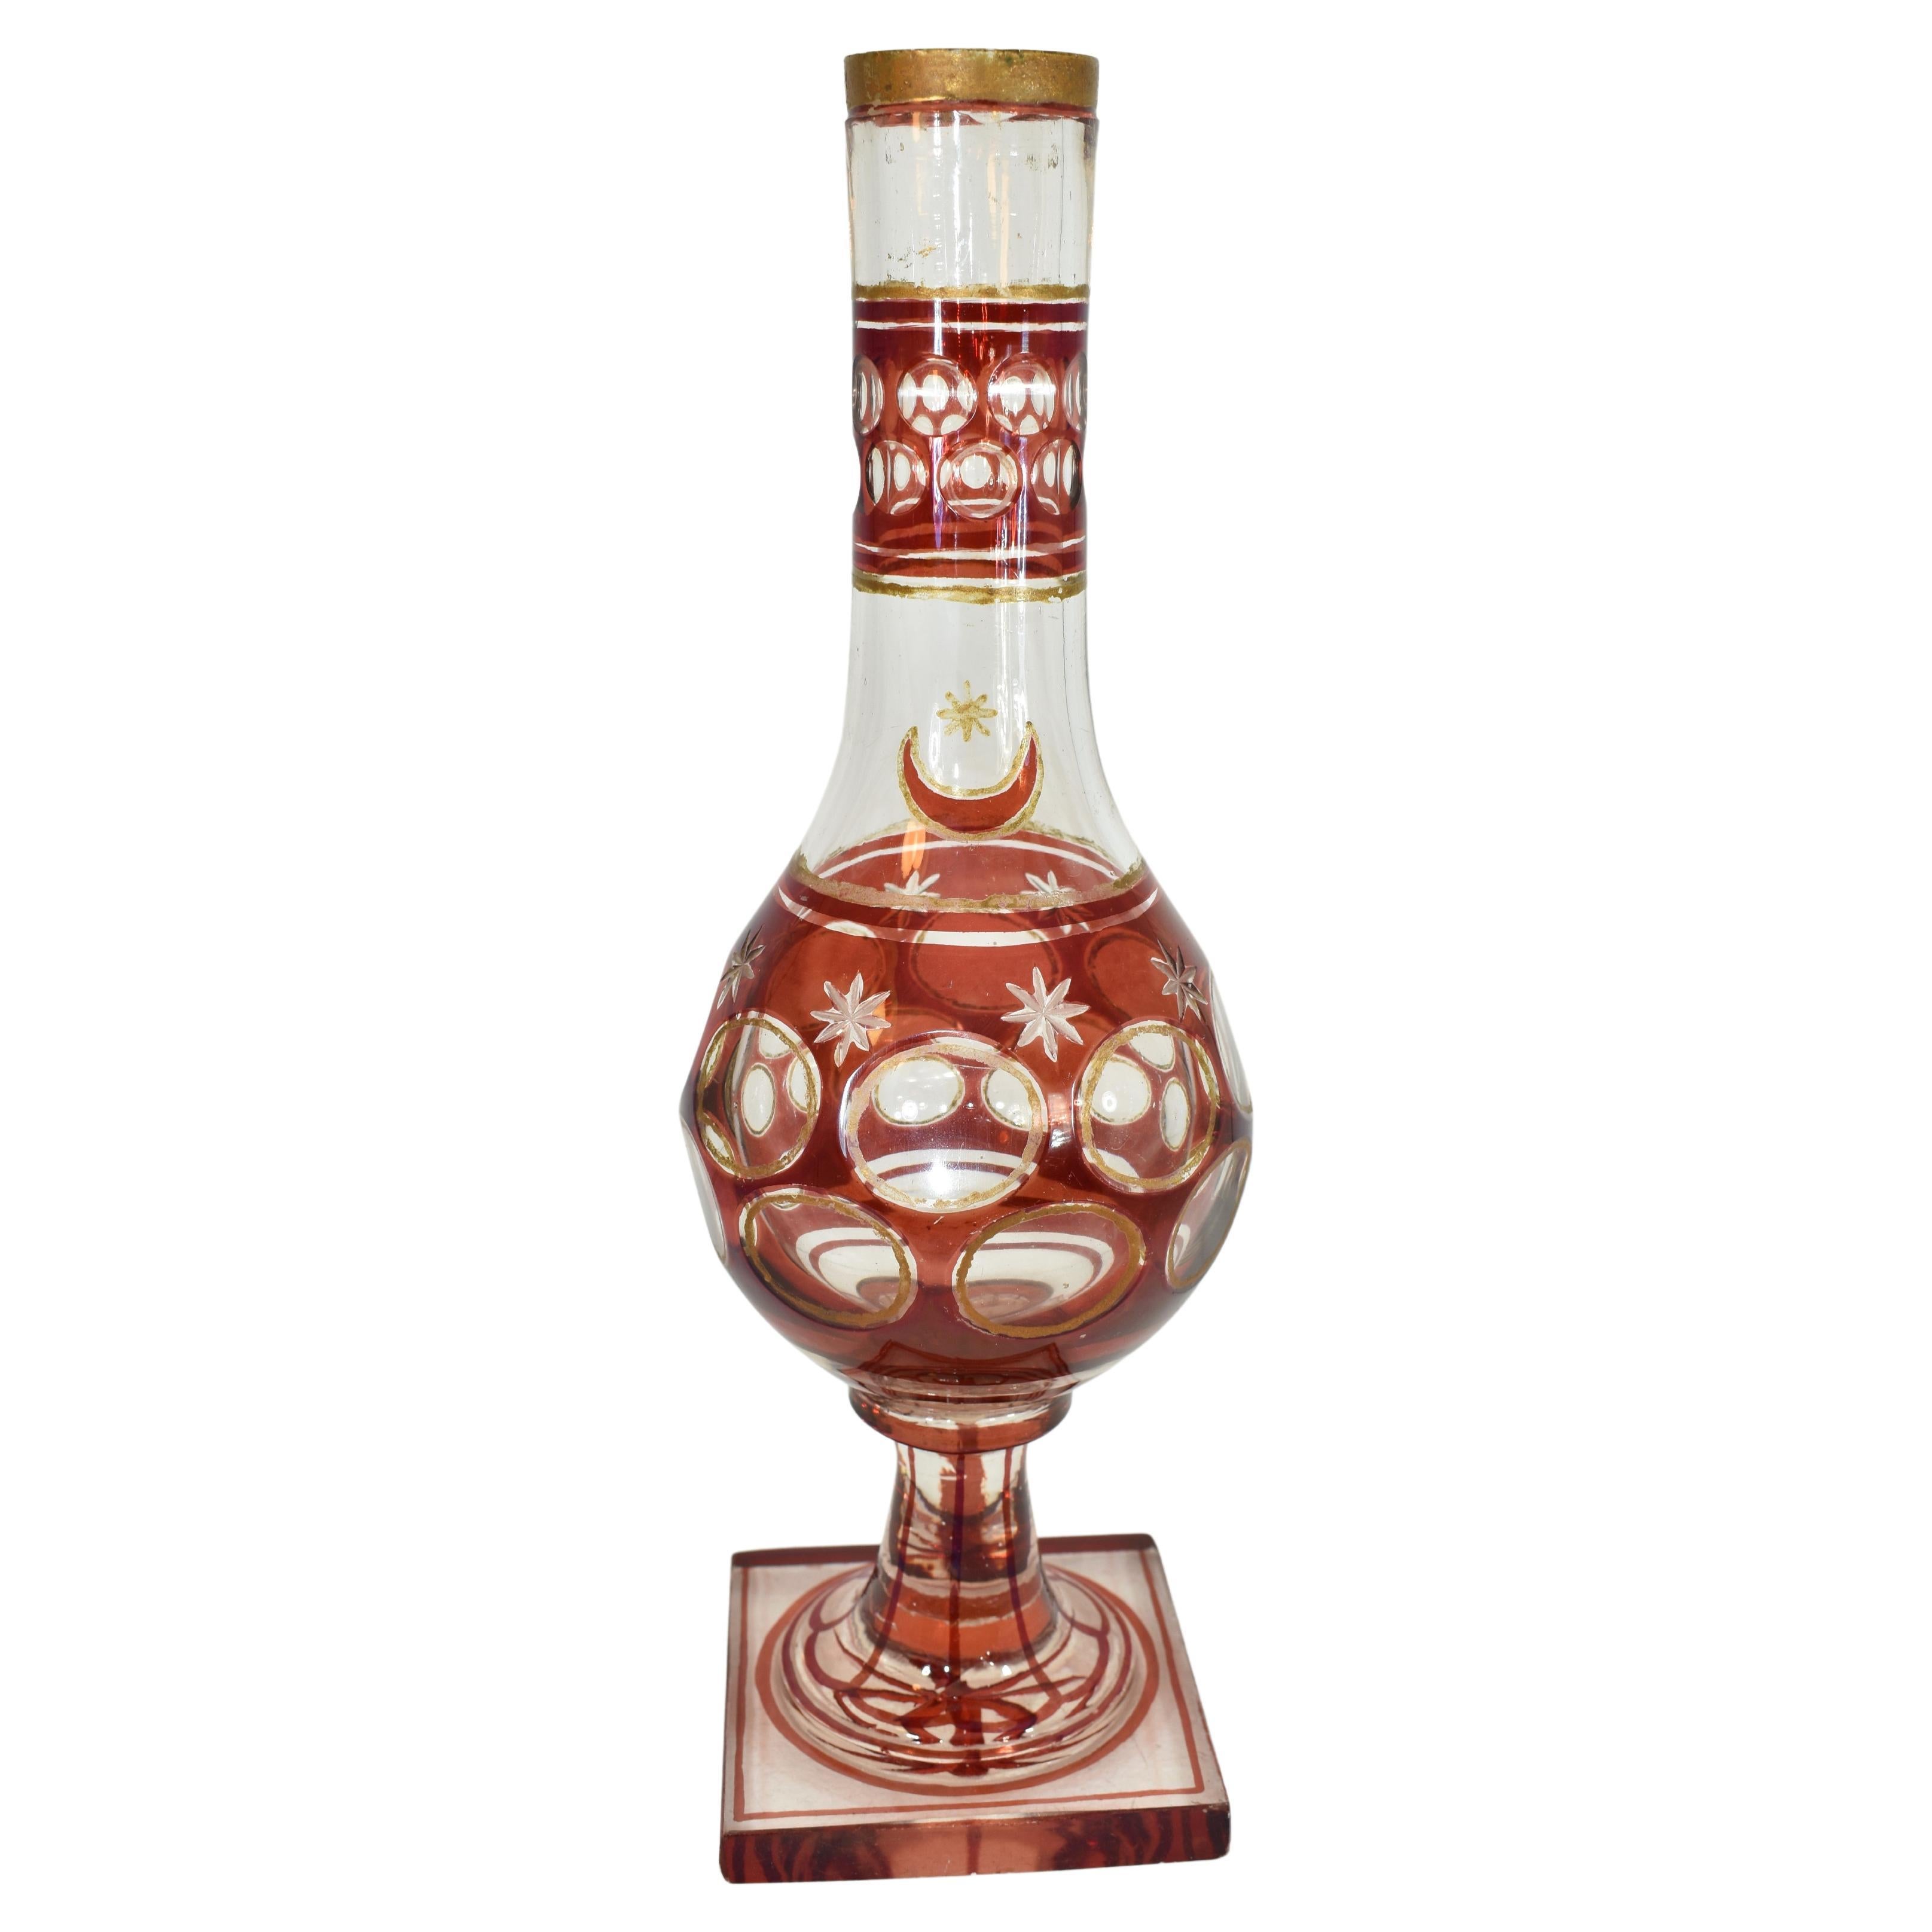 Grande base de narguilé islamique turque de Bohème
verre clair et rouge rubis
couper en forme d'étoile en bas
Bohemia, 19ème siècle
Hauteur : 32 cm. 